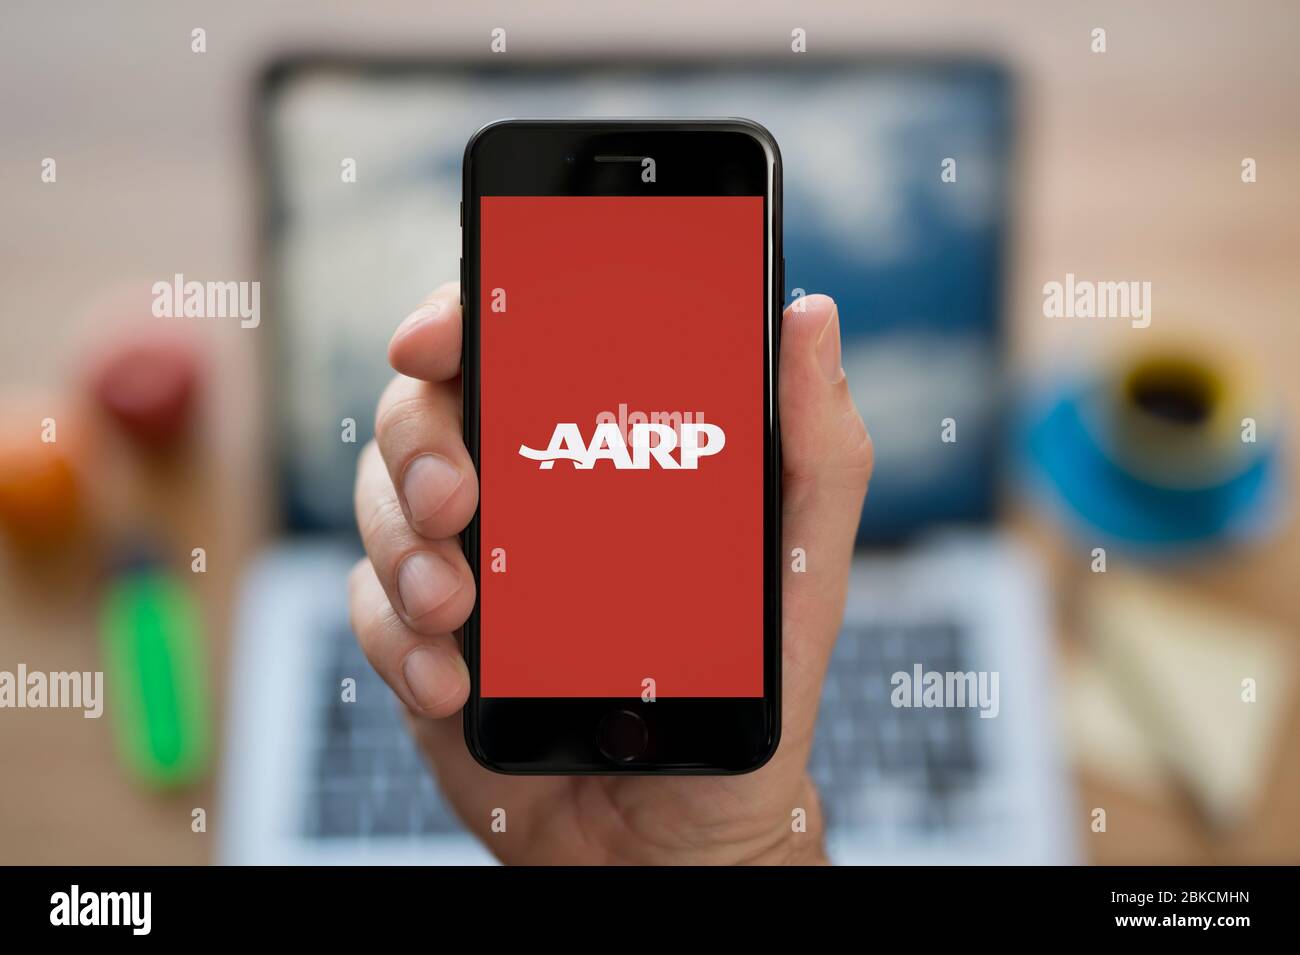 Ein Mann schaut sich sein iPhone an, das das AARP-Logo zeigt (nur redaktionelle Verwendung). Stockfoto